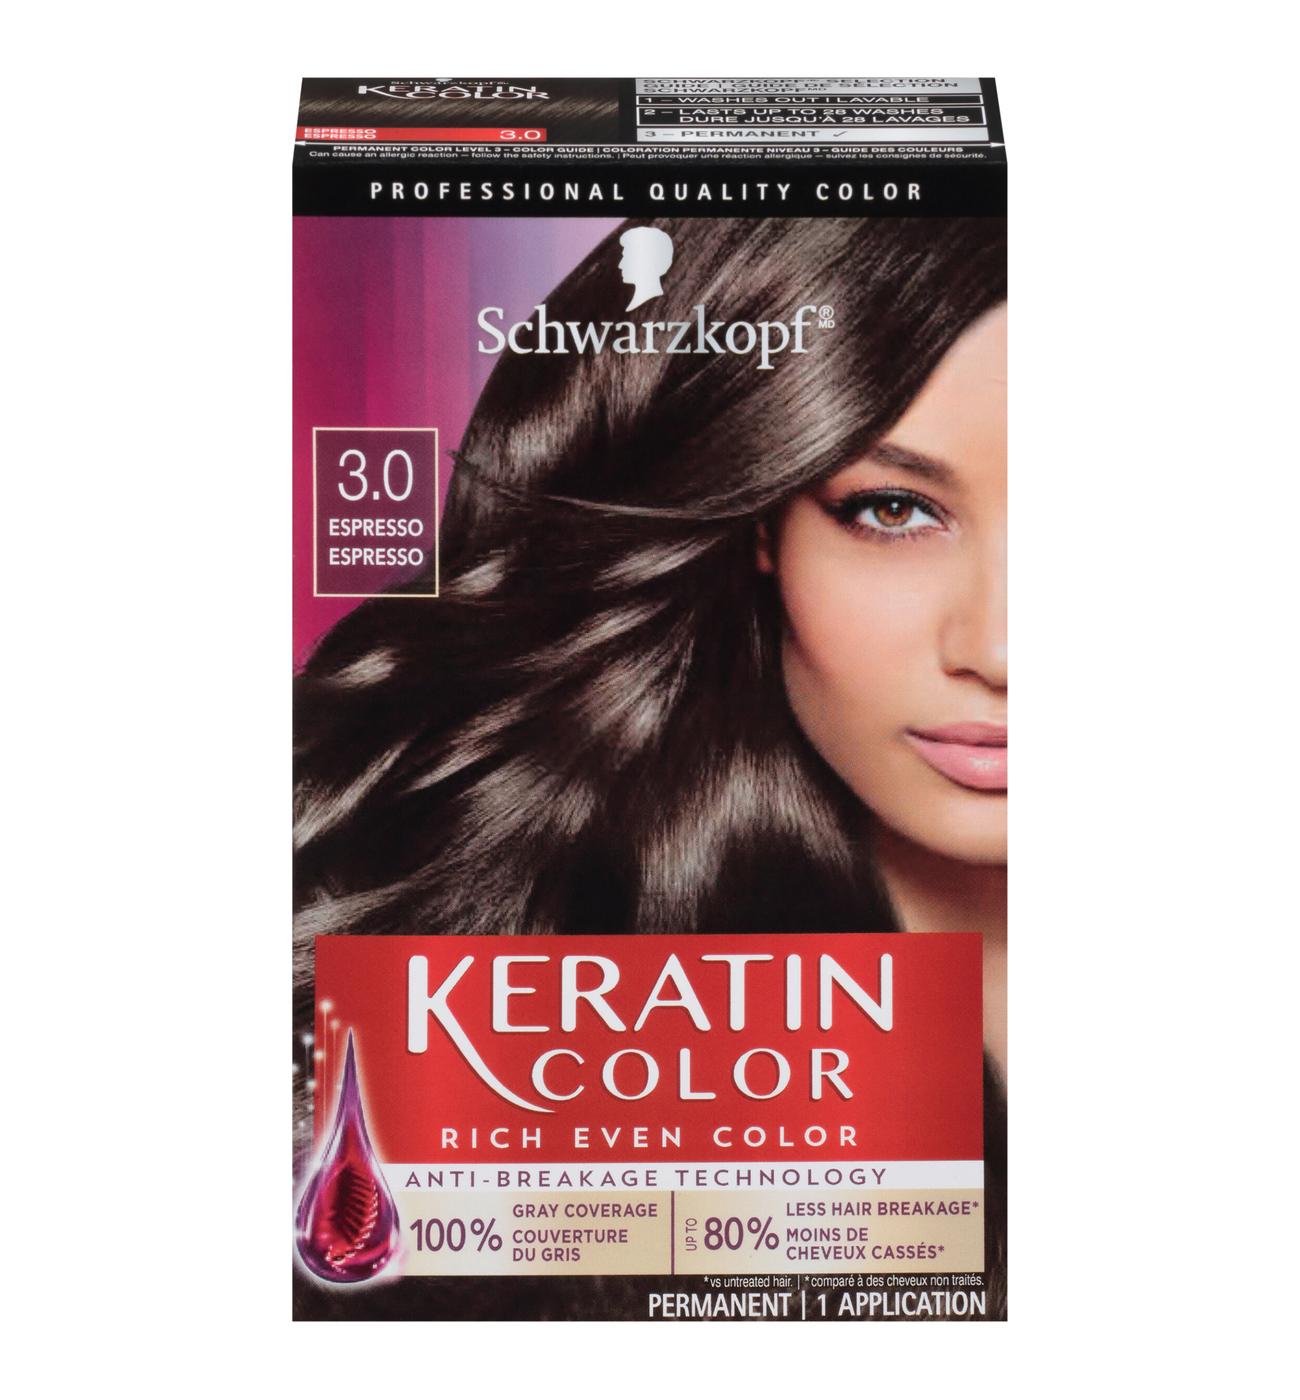 Schwarzkopf Keratin Color Permanent Hair Color - 3.0 Espresso; image 1 of 5